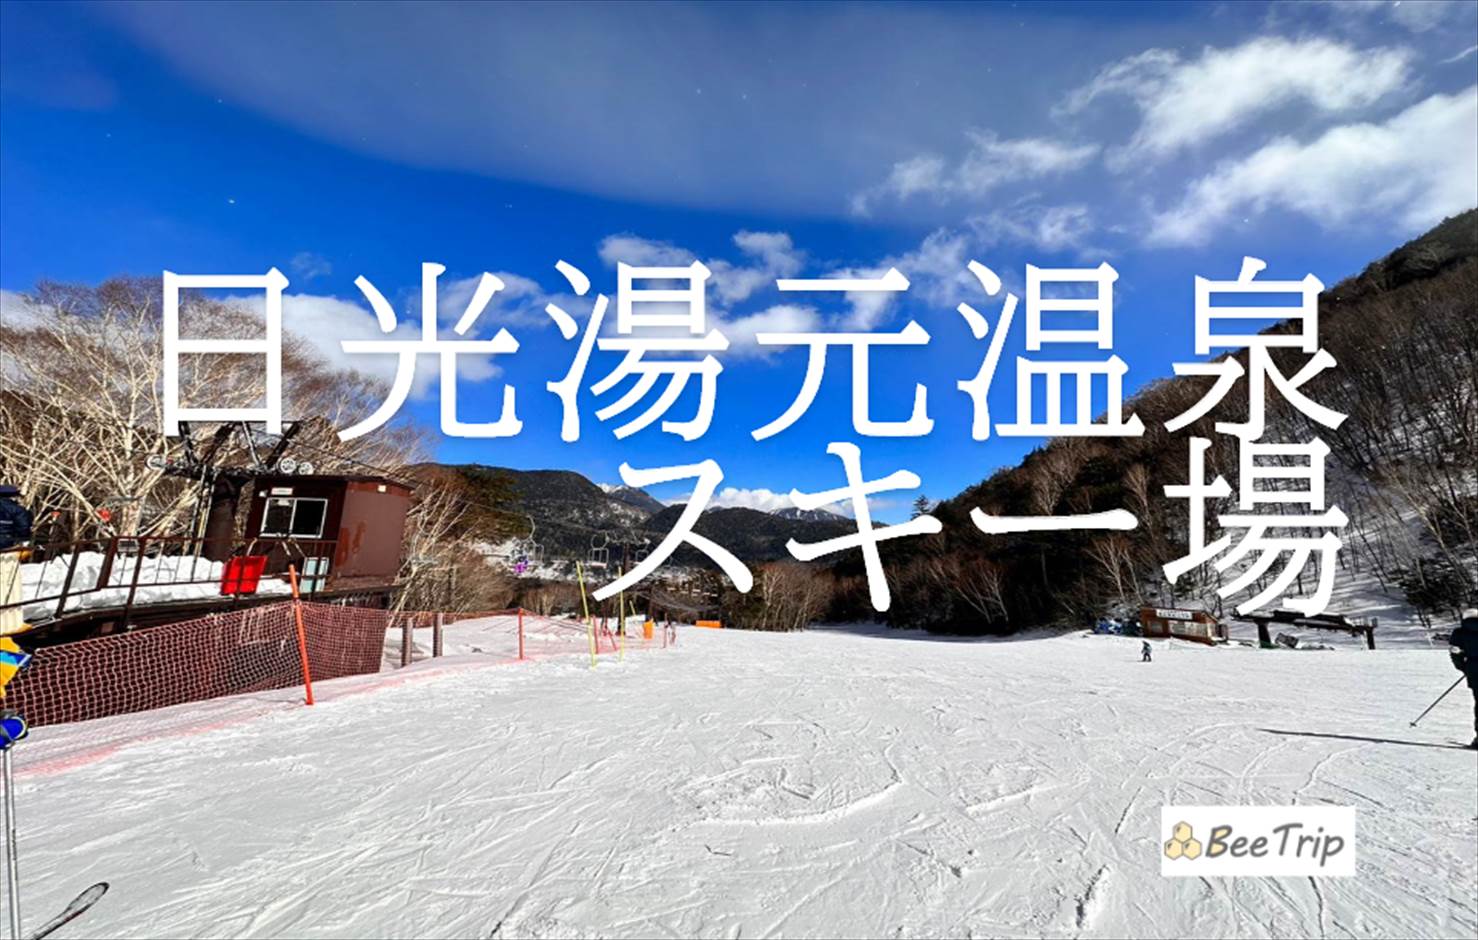 日光湯元温泉スキー場に行くなら知っておきたい！魅力とアクセスや料金、宿泊施設などの情報まとめ